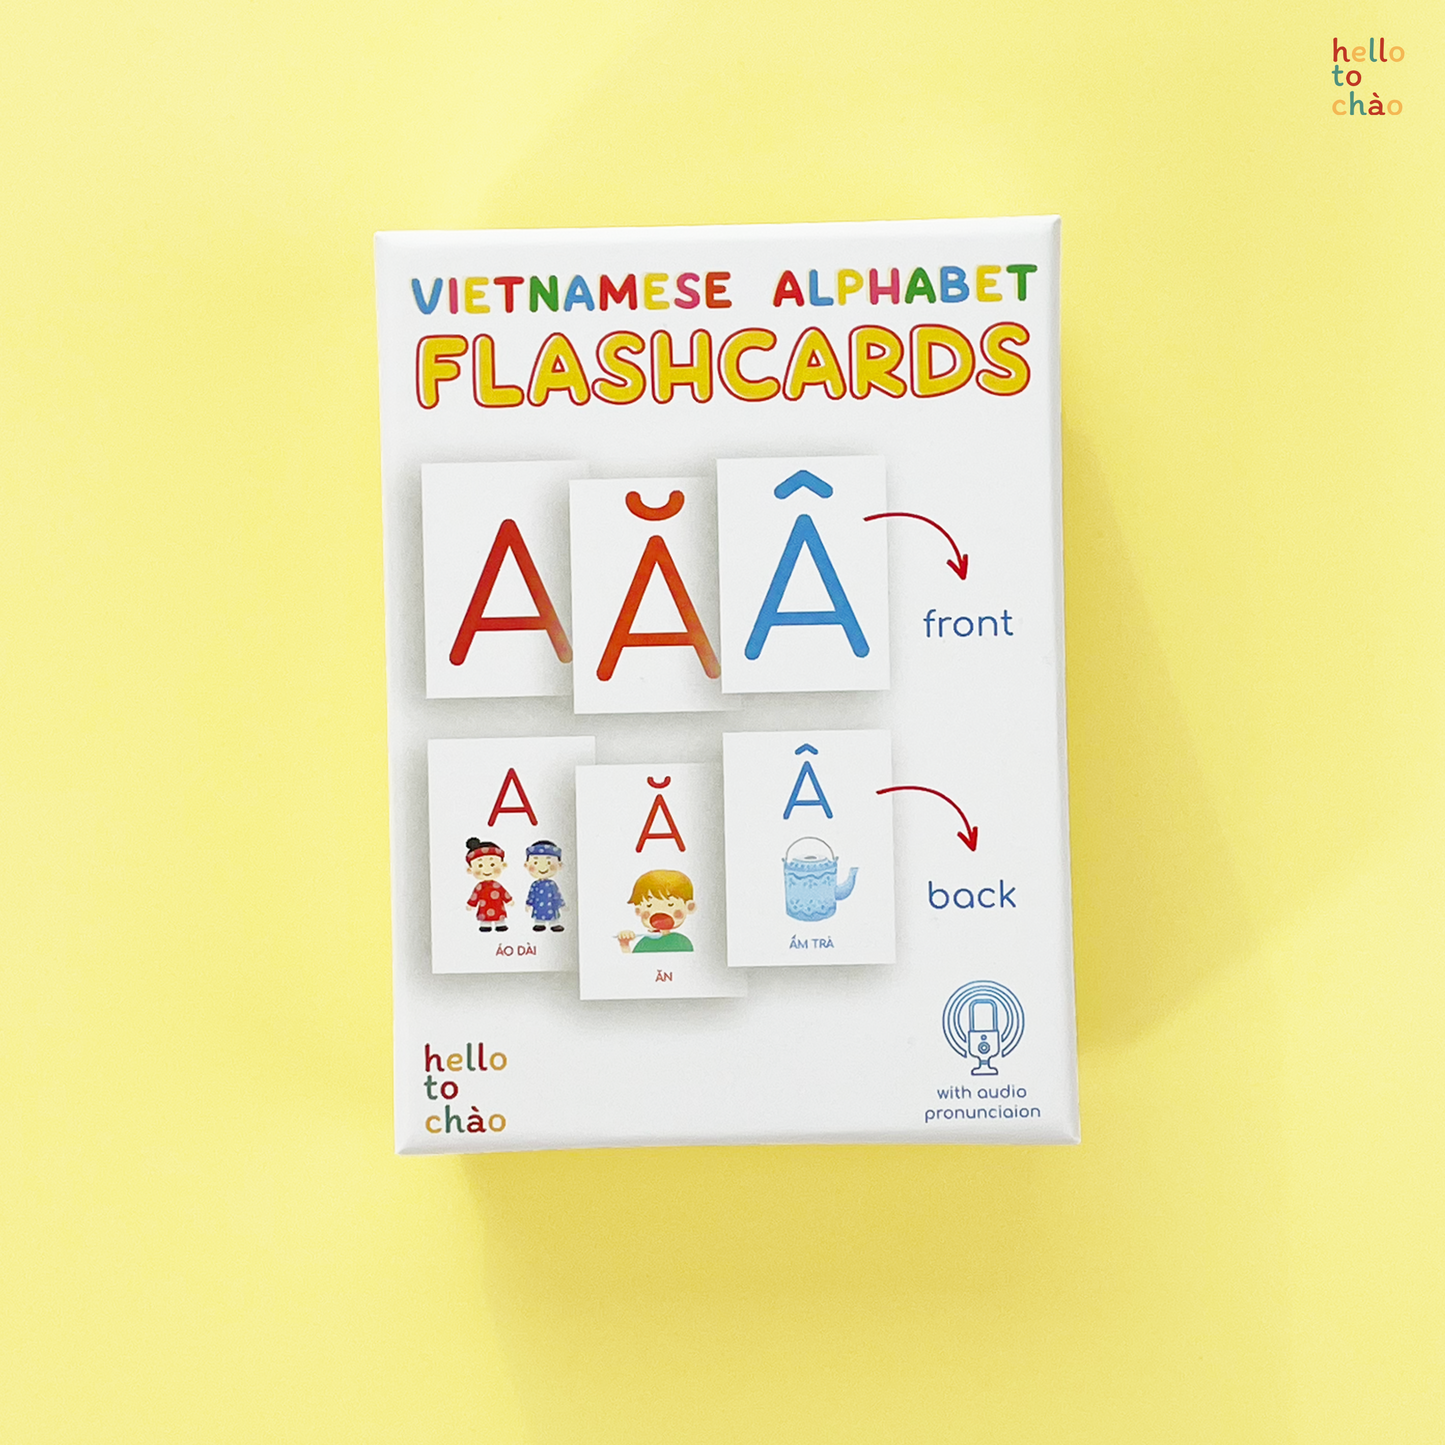 Vietnamese Alphabet Flashcards | Thẻ flashcard học bảng chữ cái tiếng Việt